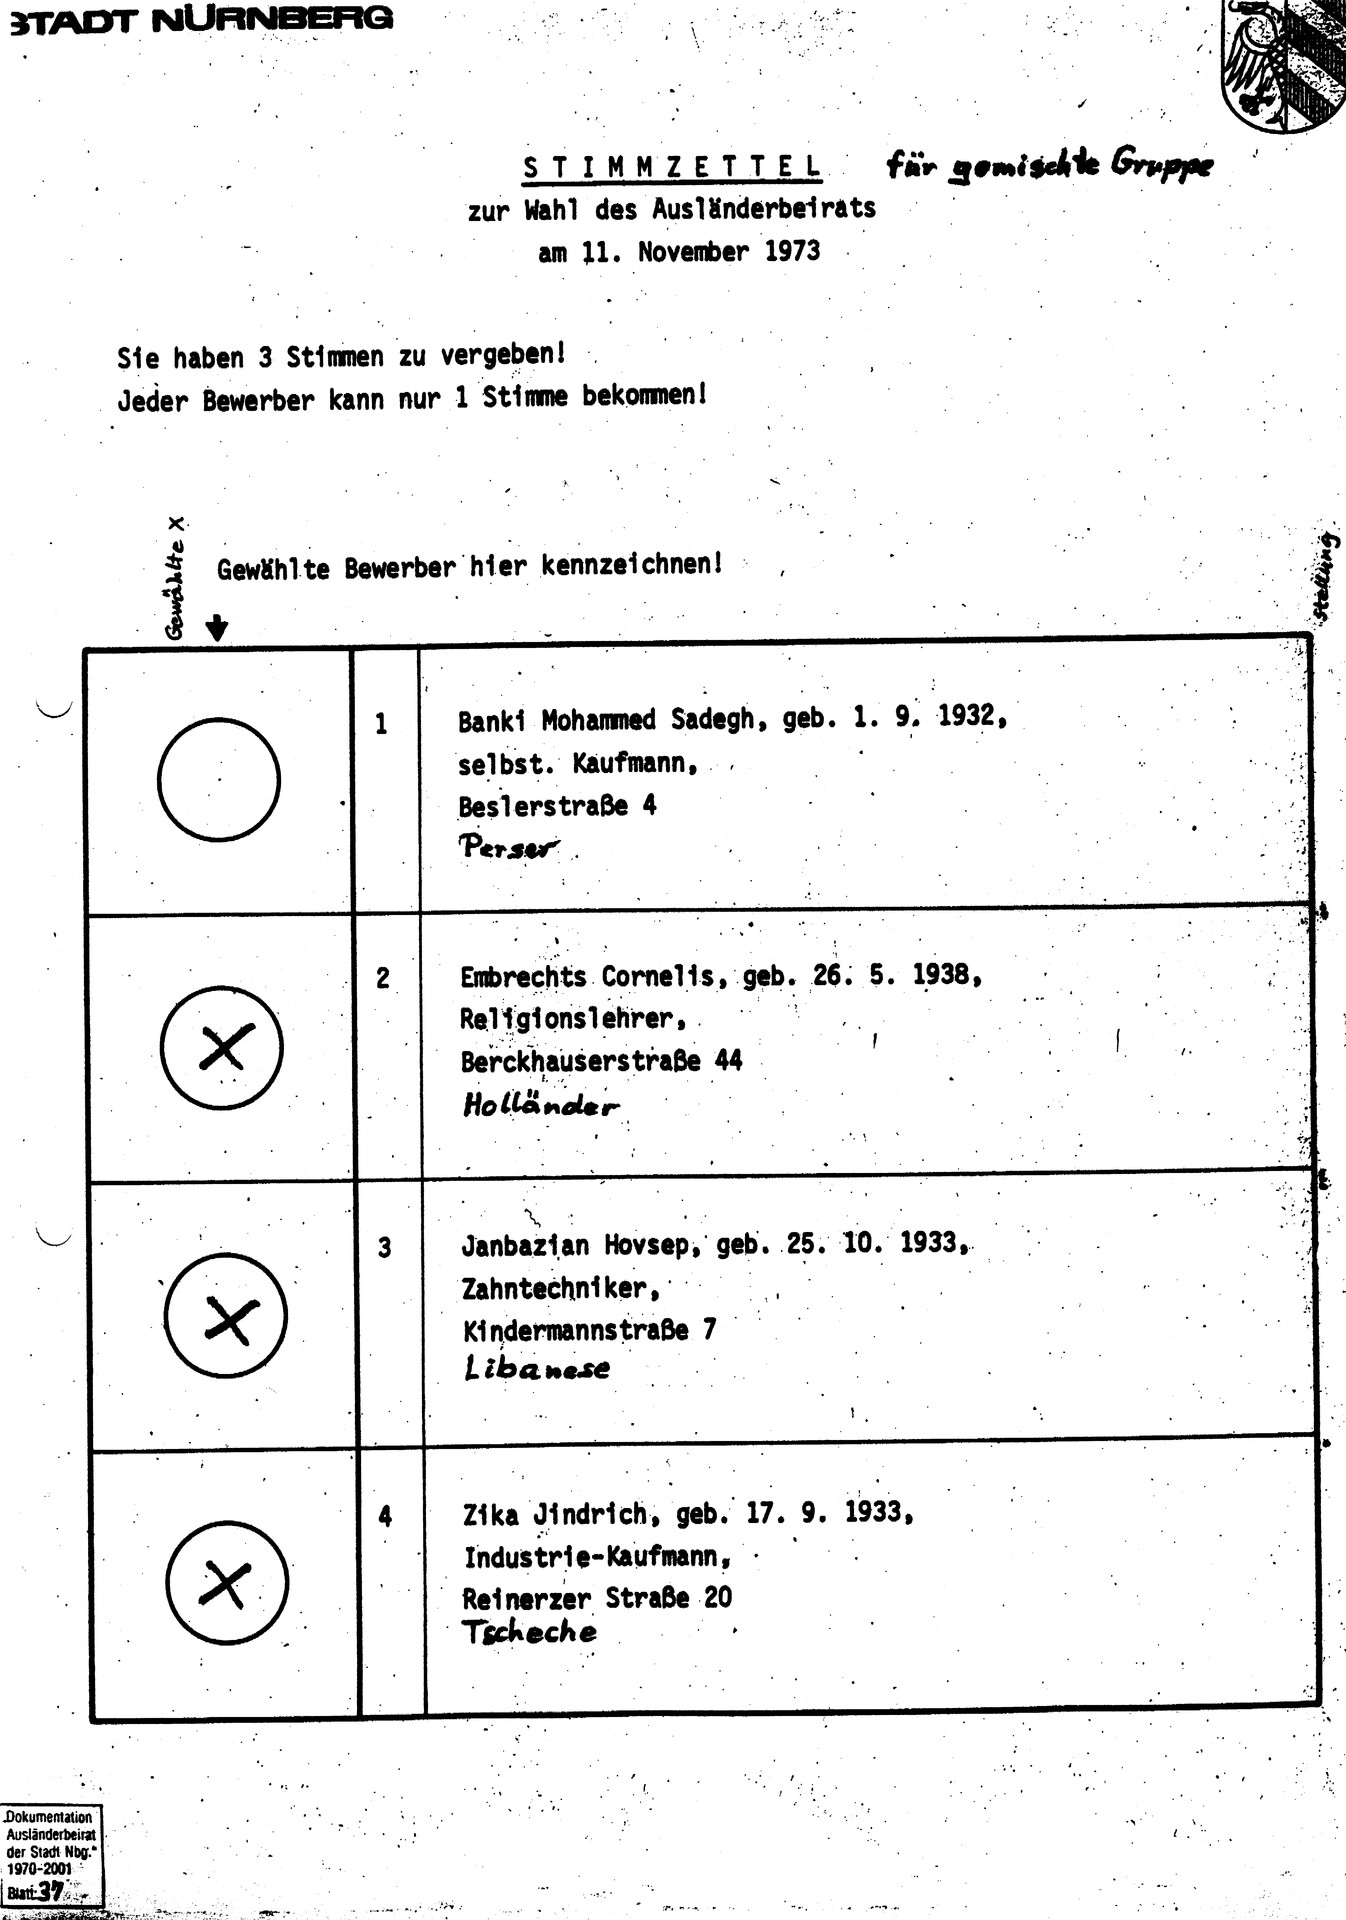 1973_Stimmzettel_gemischte Gruppe_bearbeitet.jpg